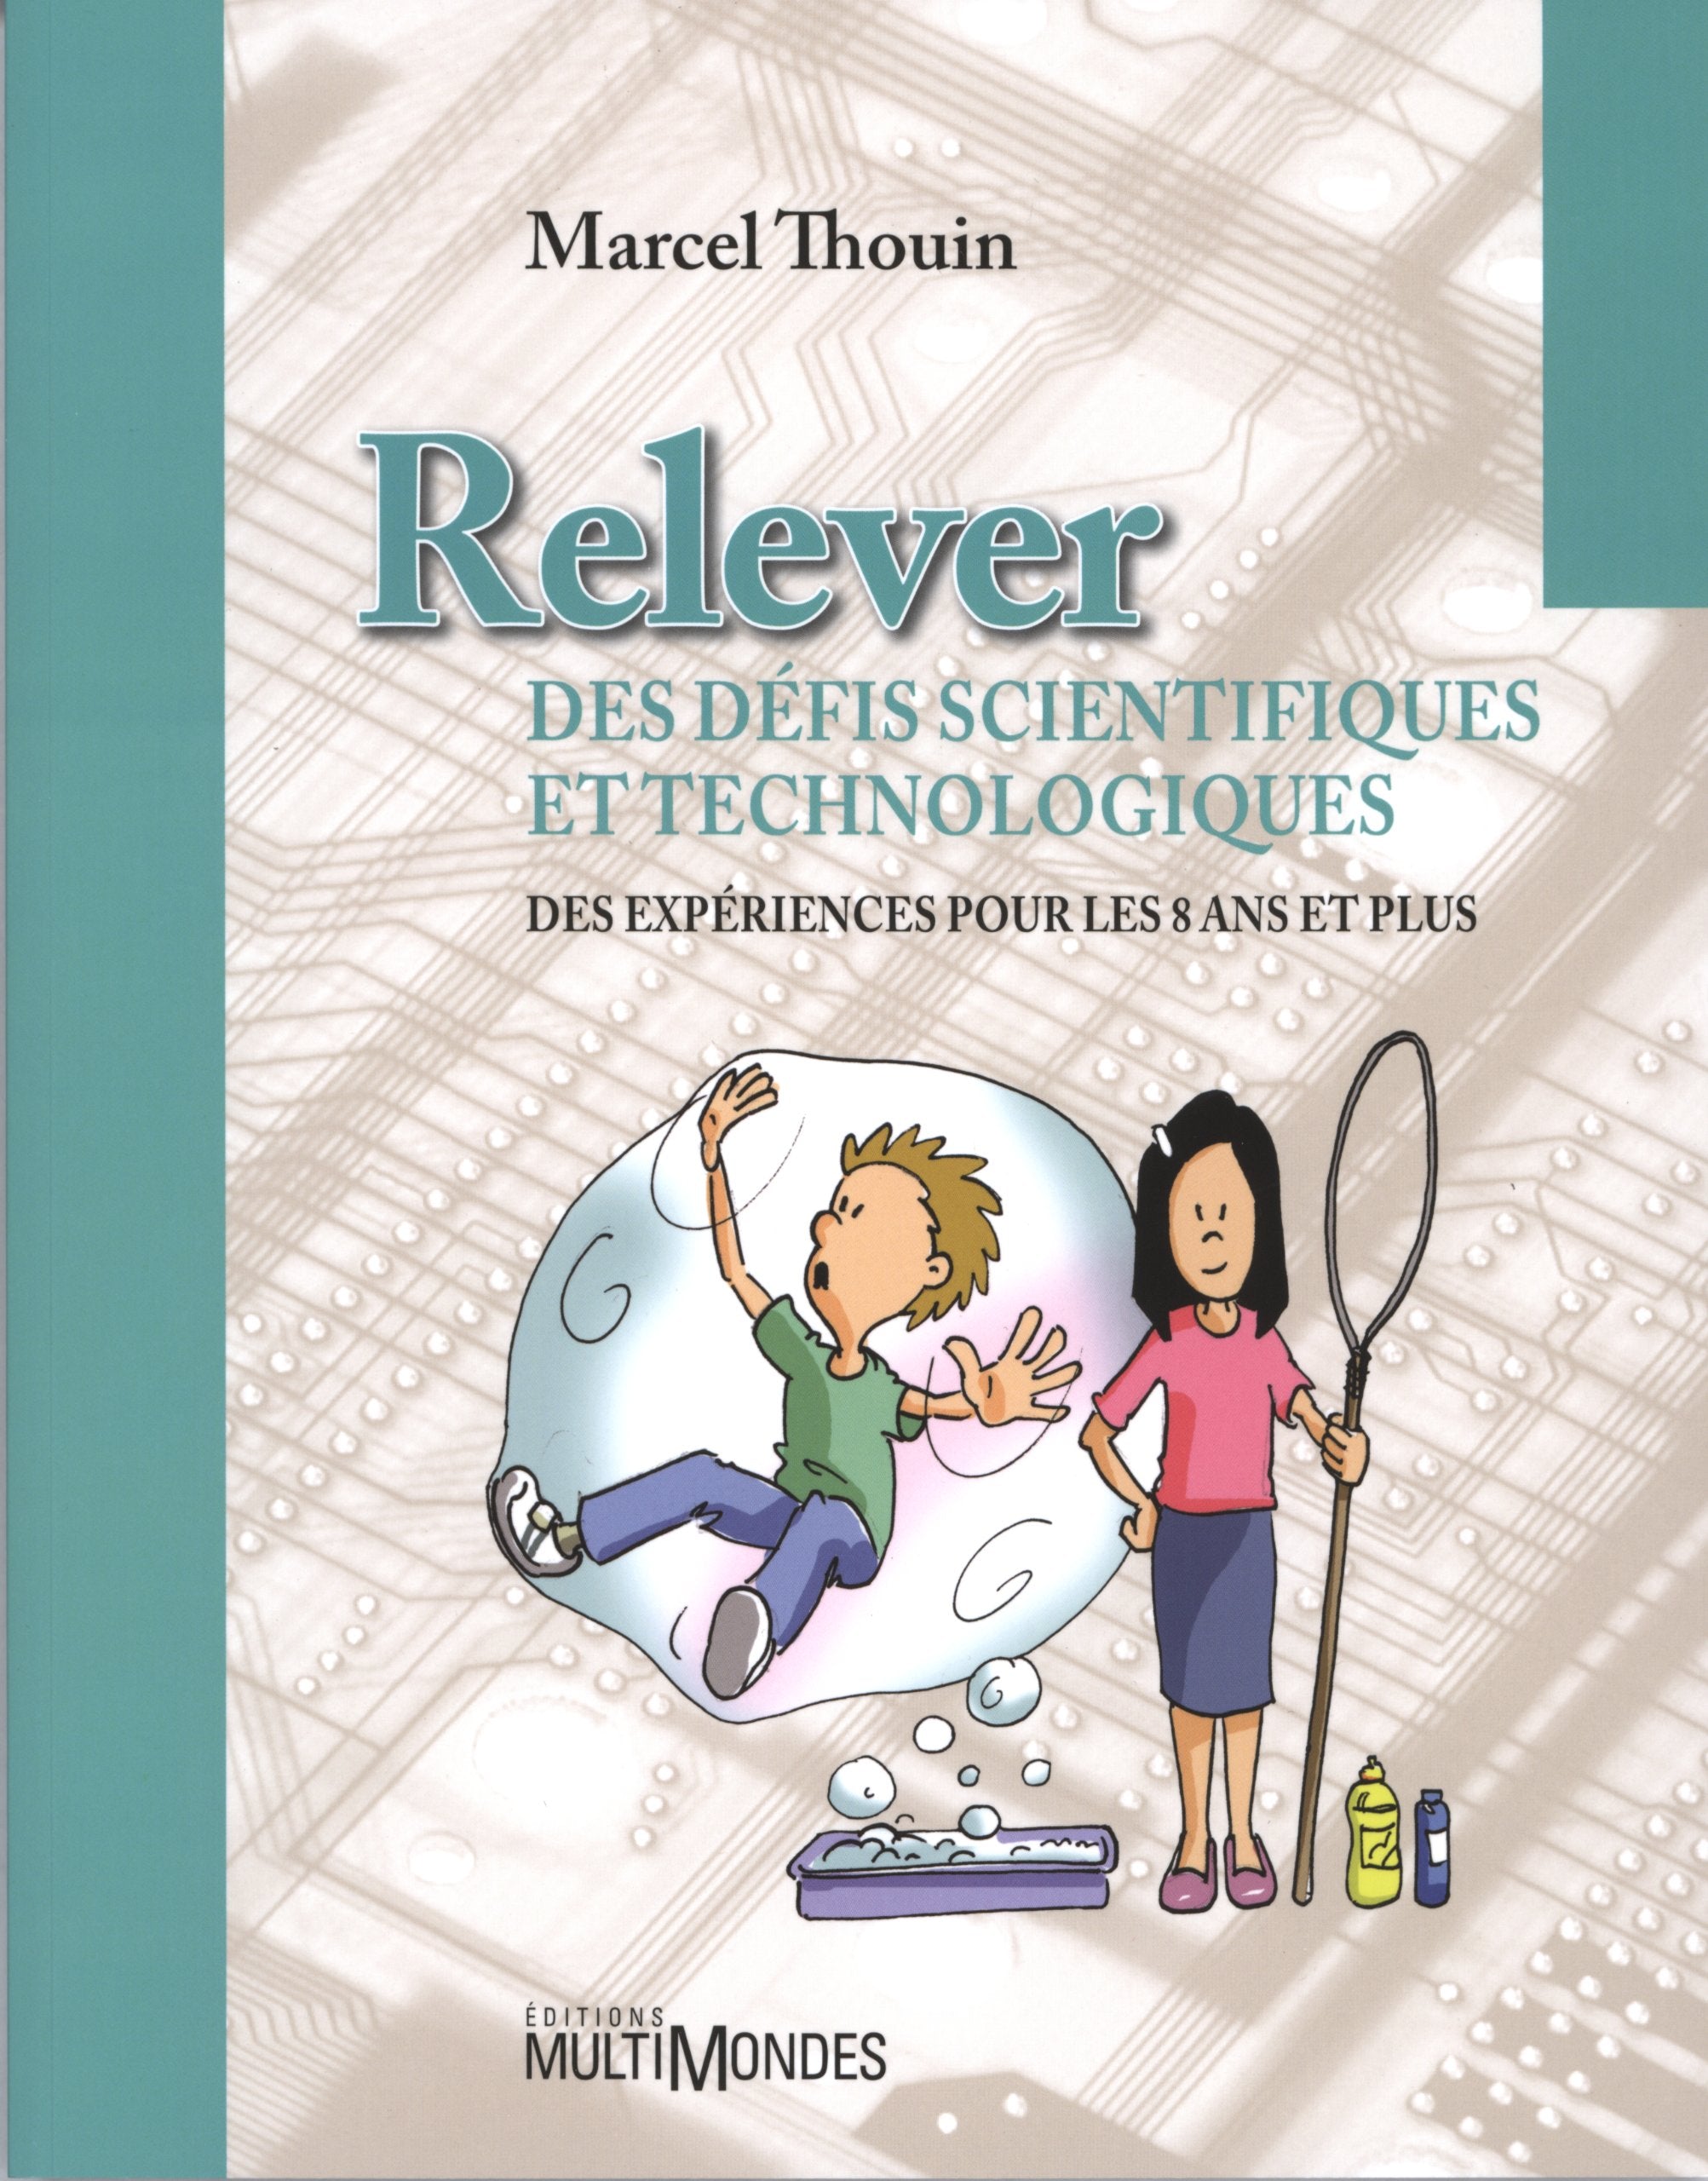 Livre ISBN 2895441863 Relever des défis scientifiques et technologiques (Marcel Thouin)